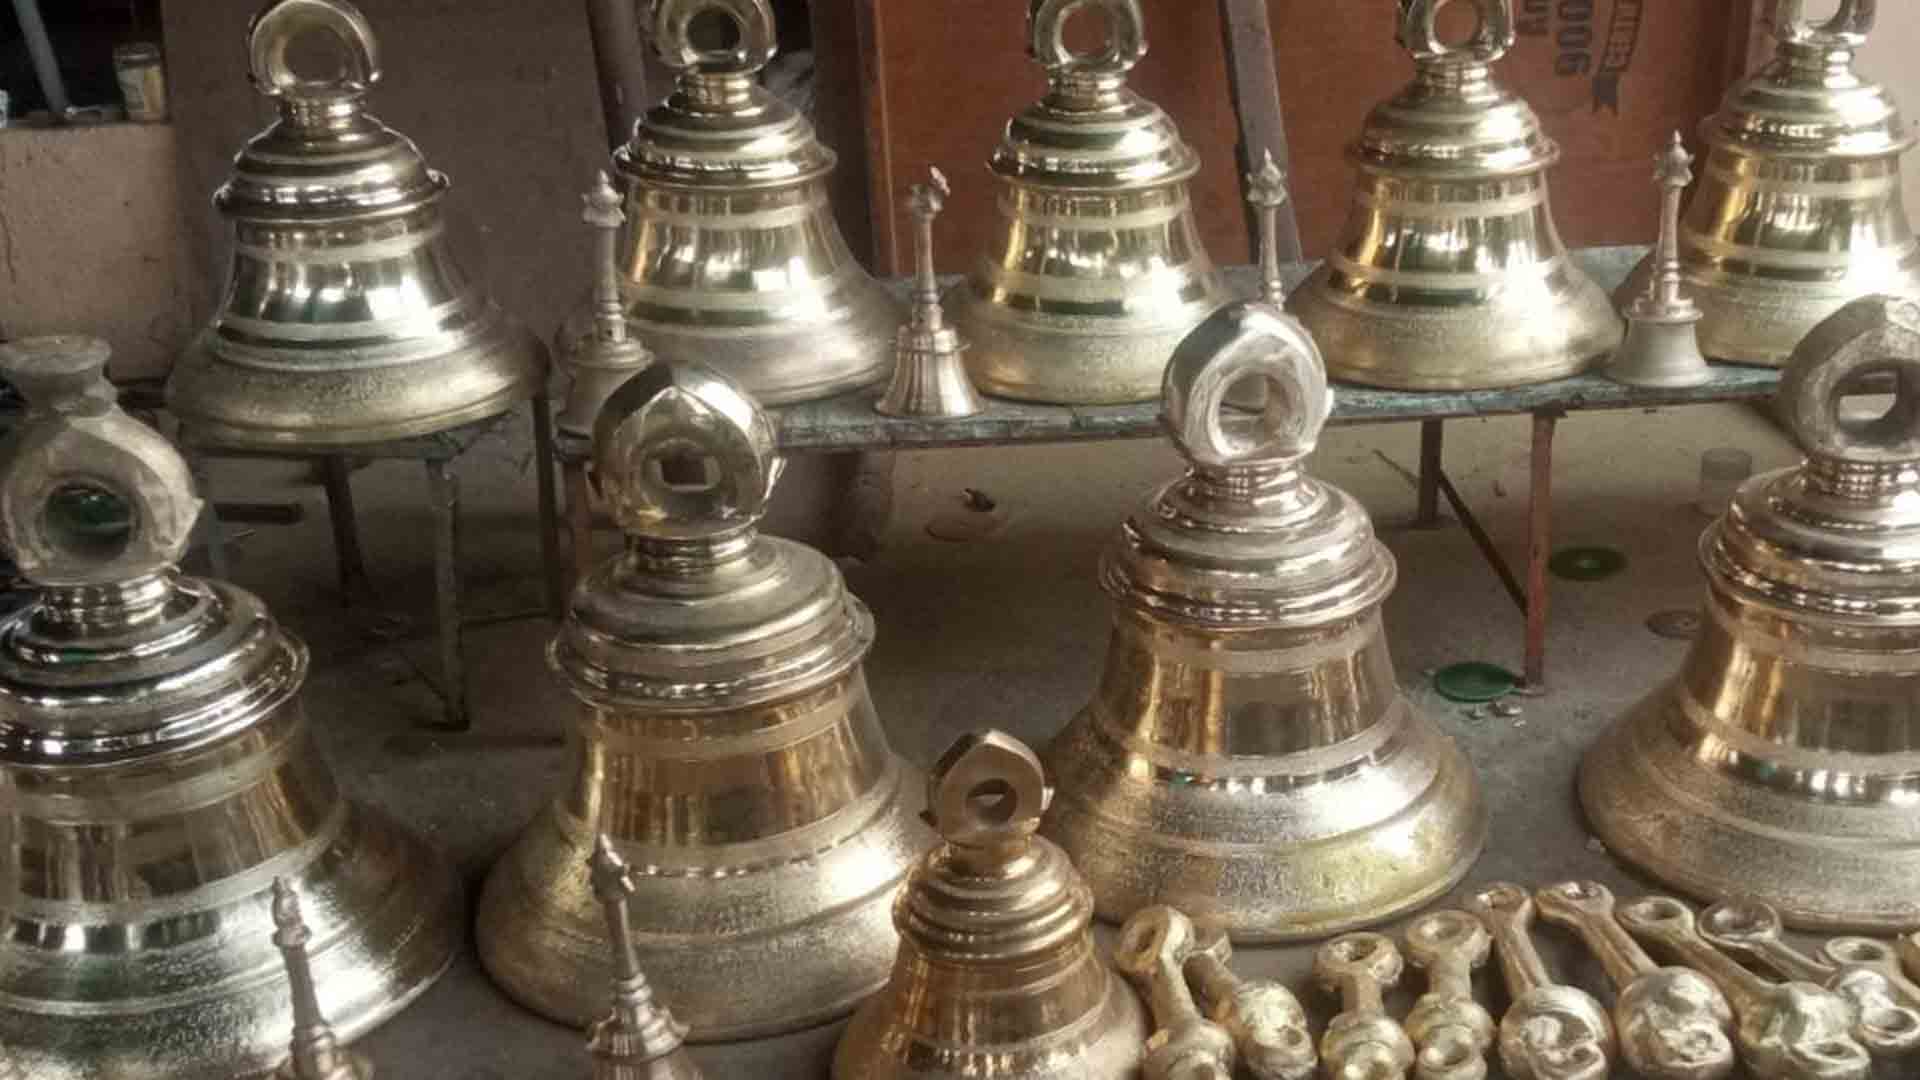 அயோத்தி ராமர் கோயில் கும்பாபிஷேகத்துக்கு 12 ஆலய மணி மற்றும் 36 பிடி மணிகள் அனுப்பி வைப்பு !